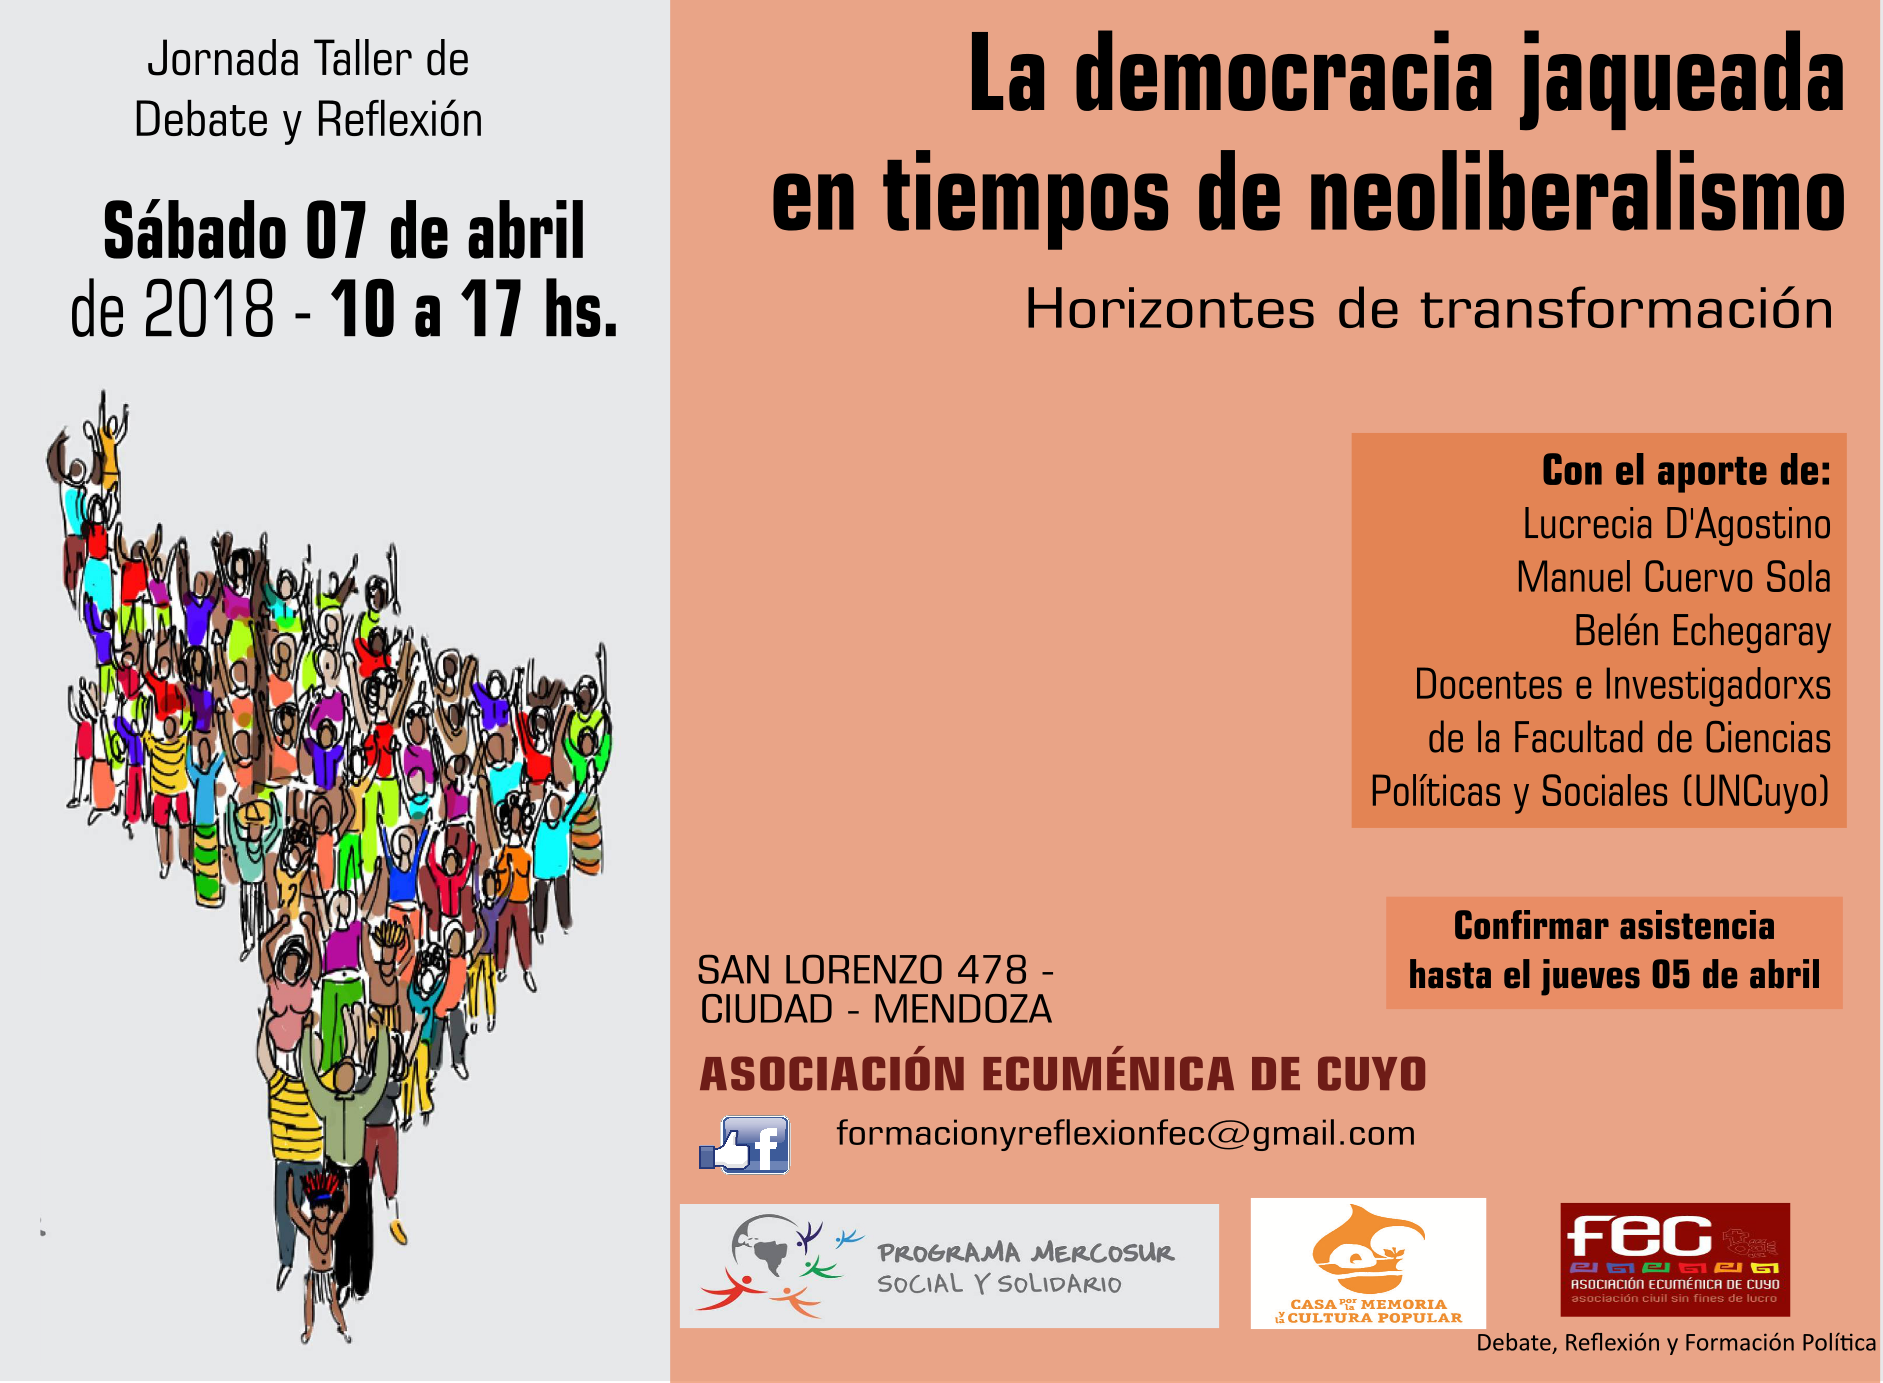 Jornada Taller “La democracia jaqueada en tiempos de neoliberalismo”